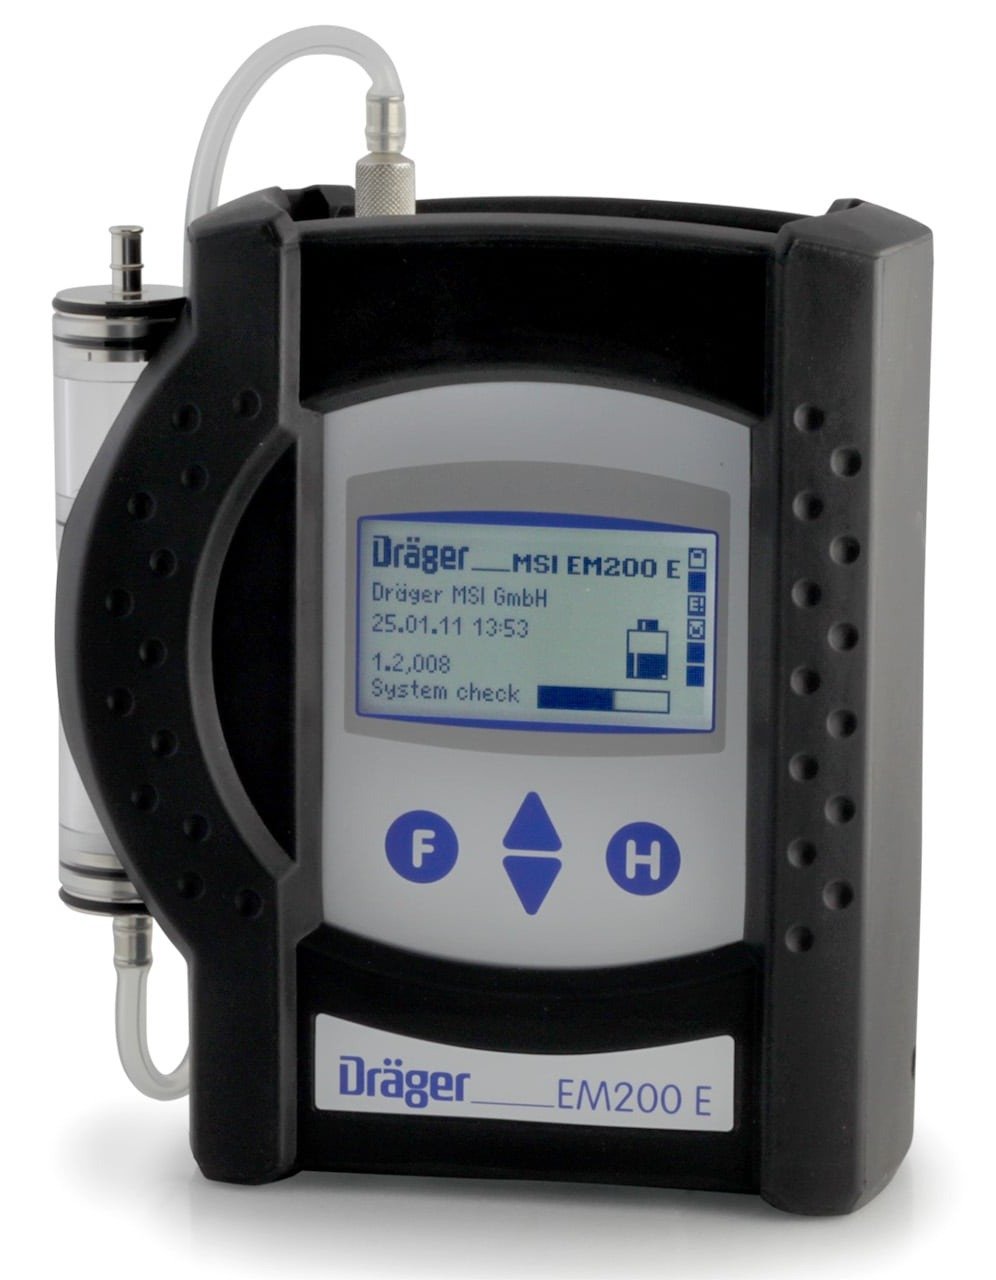 draeger-msi-em200-e-53-flue-gas-analyzer-3-2-EM200E